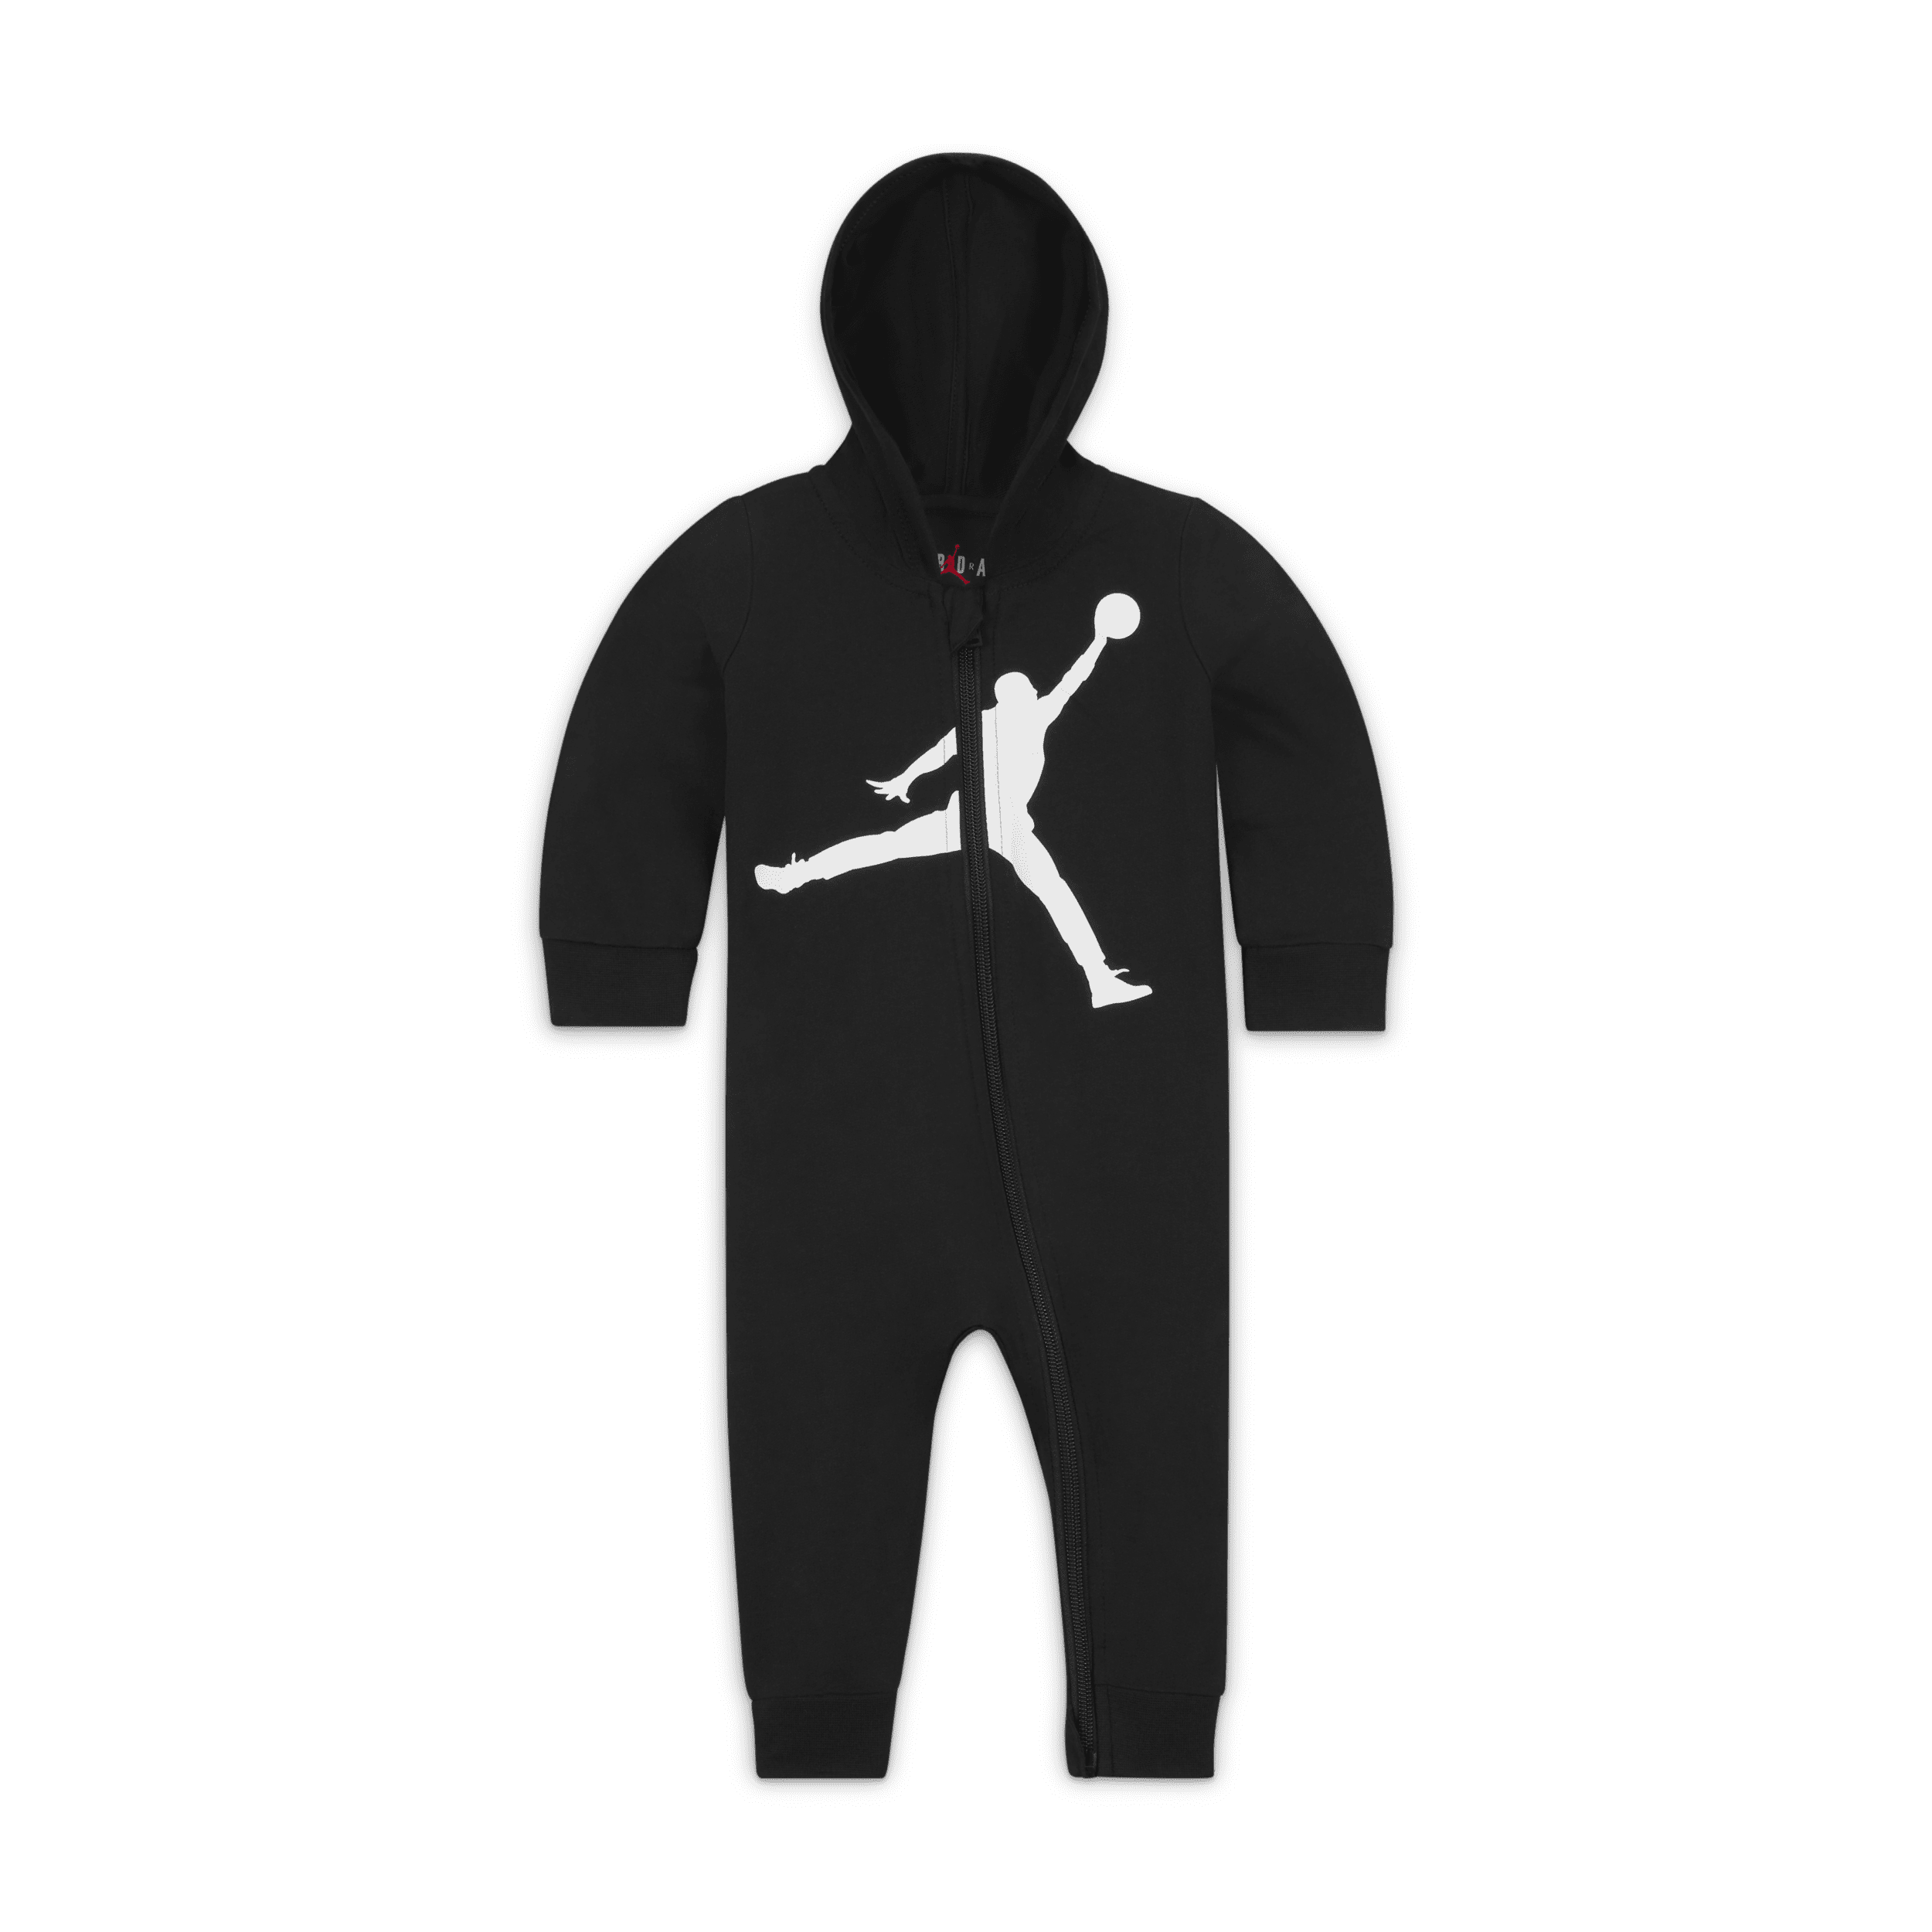 Jordan-Jumpman-heldragt med hætte til babyer (3-6 mdr.) - sort